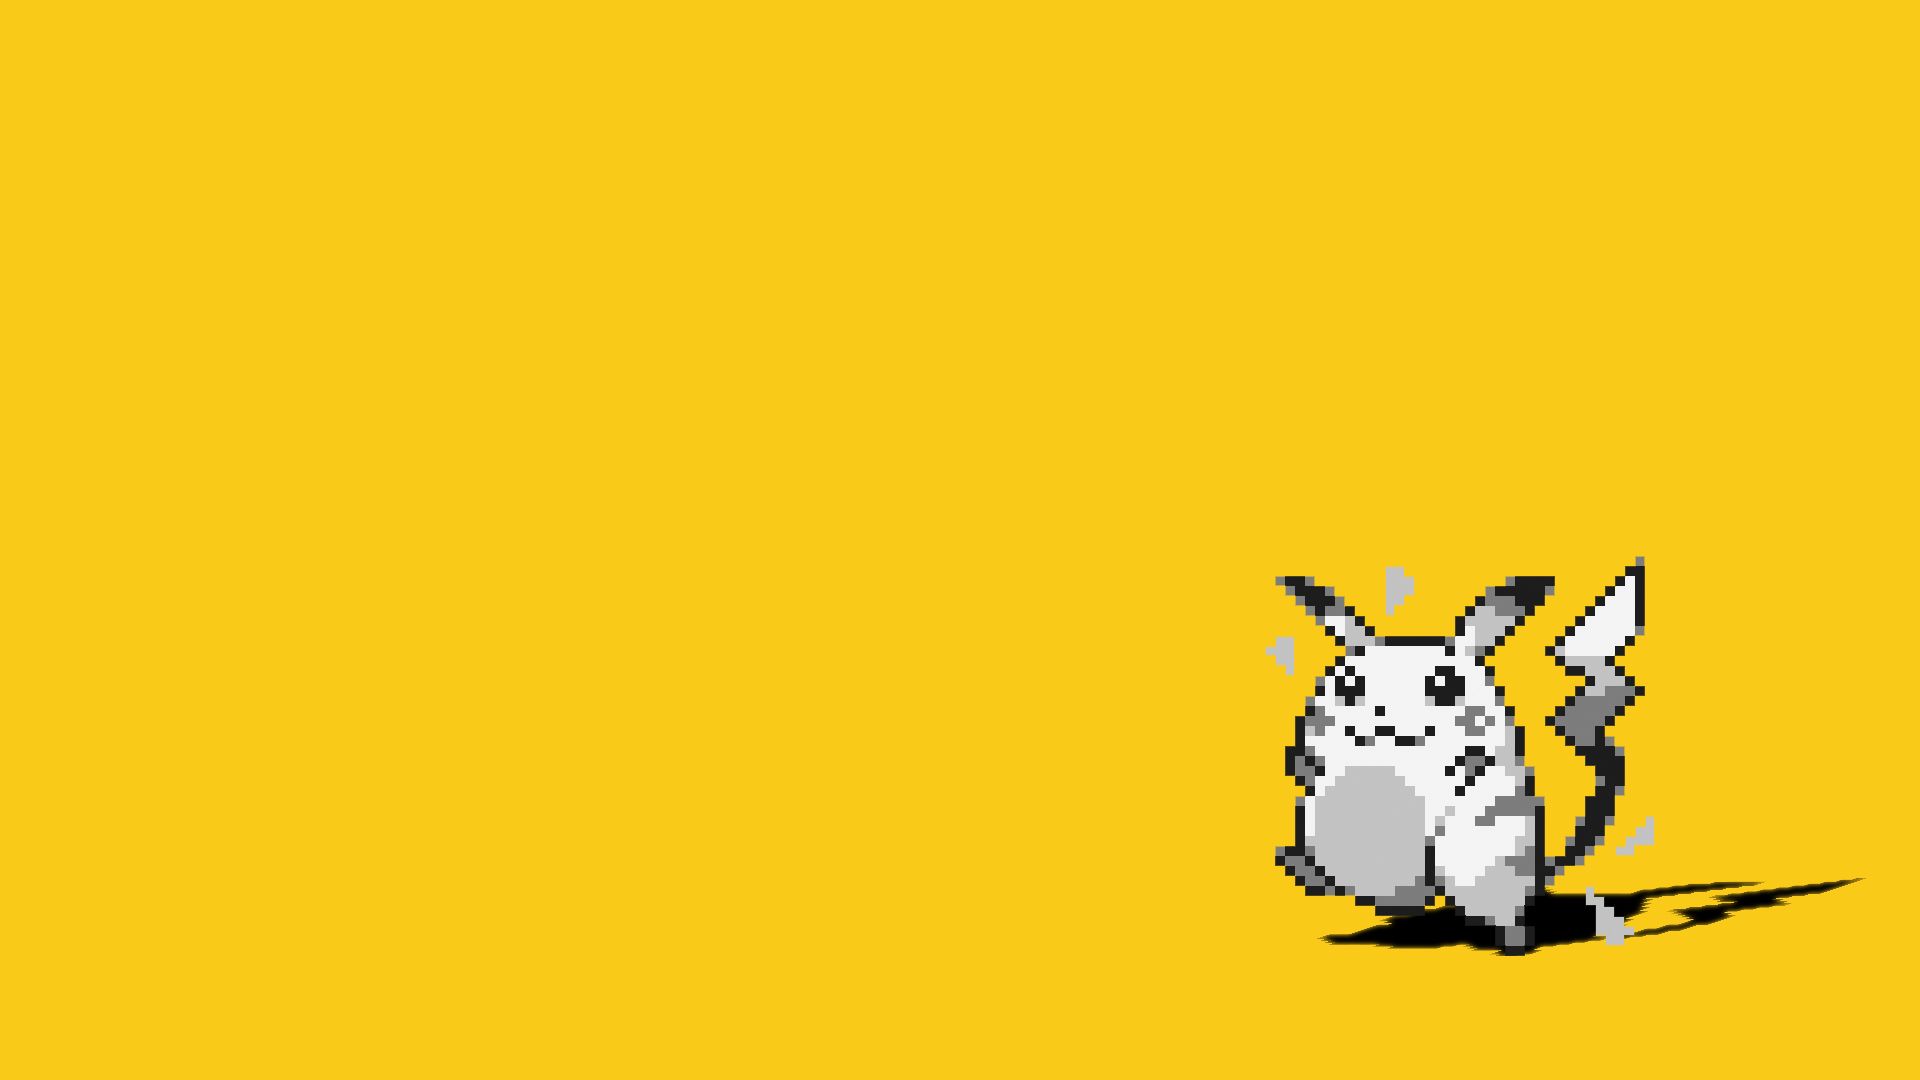 My chubby Pikachu wallpaper